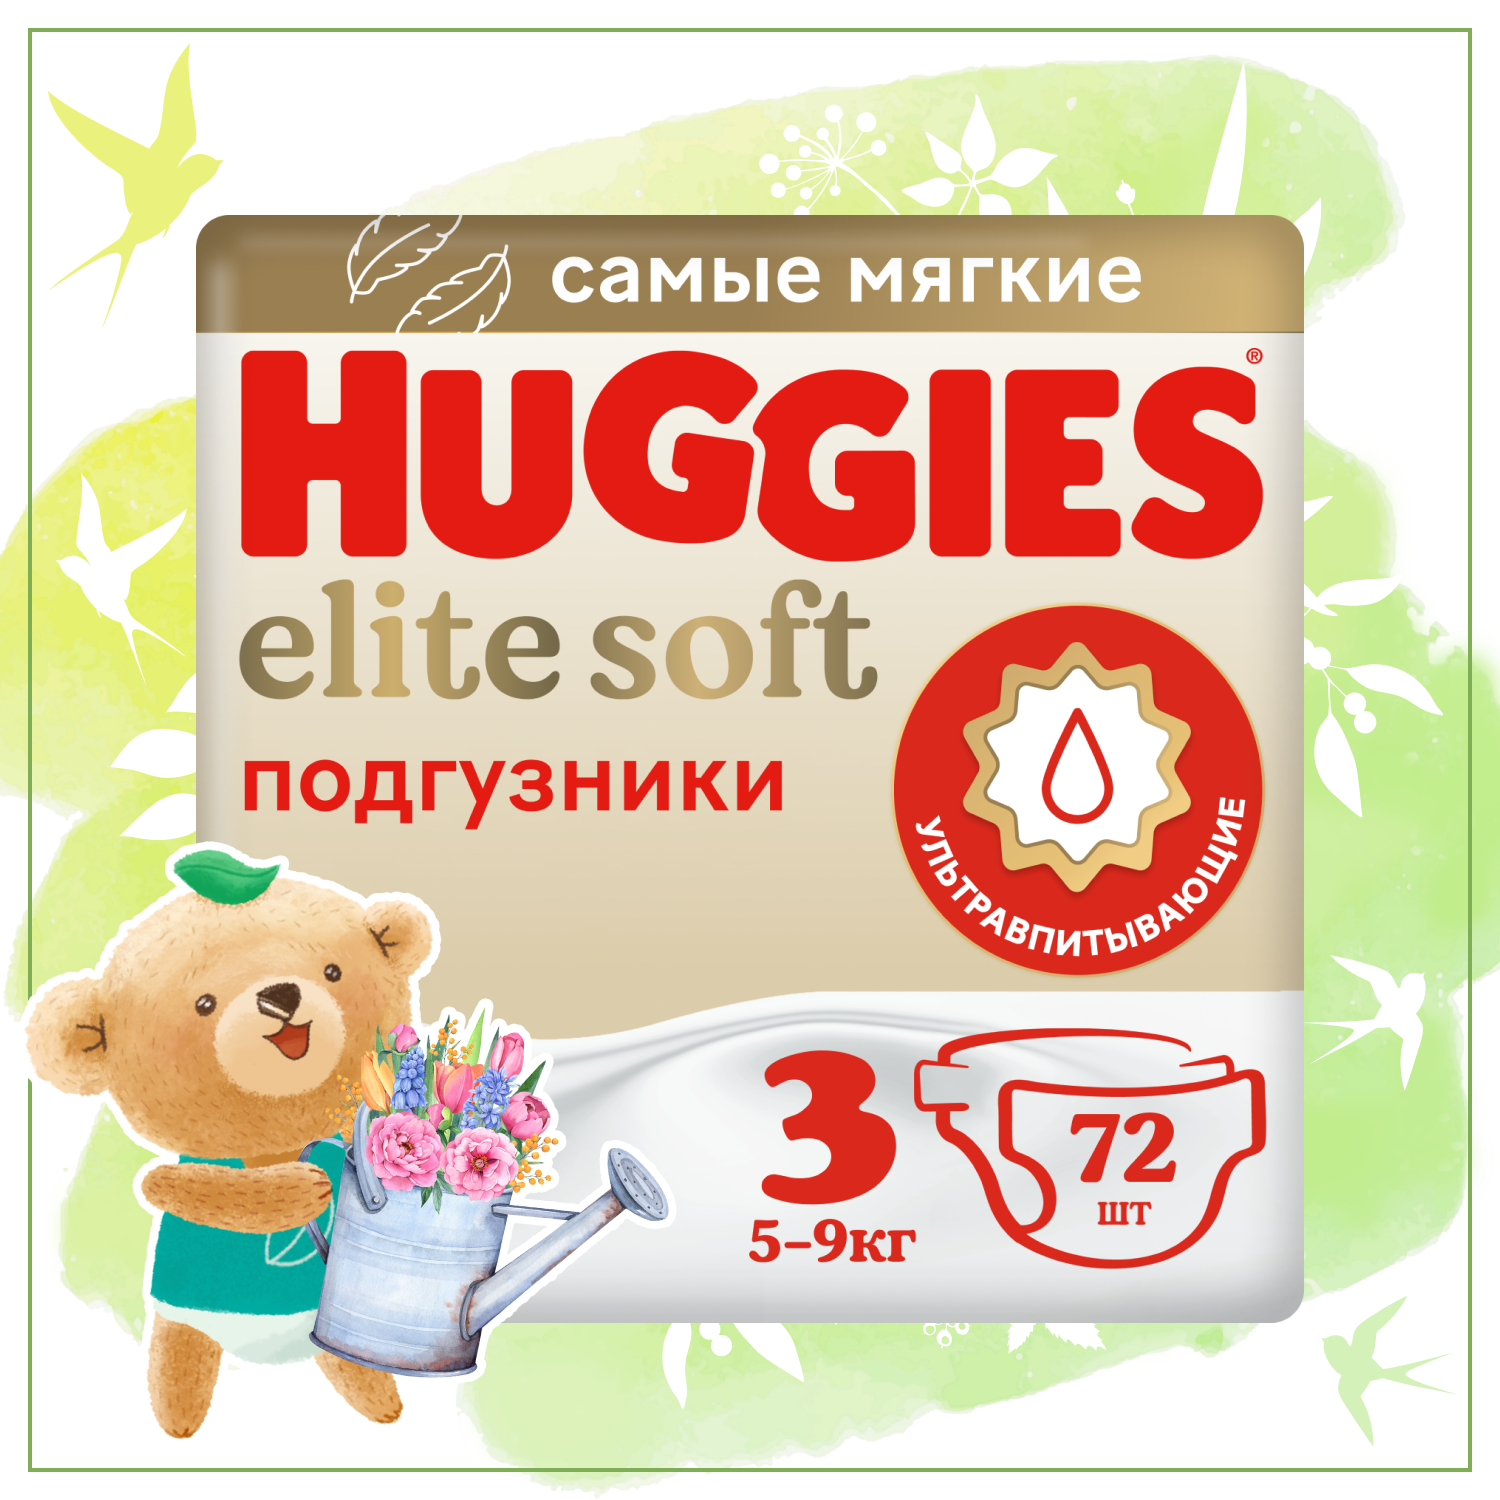 Подгузники Huggies Elite Soft 3 5-9кг 72шт - фото 1